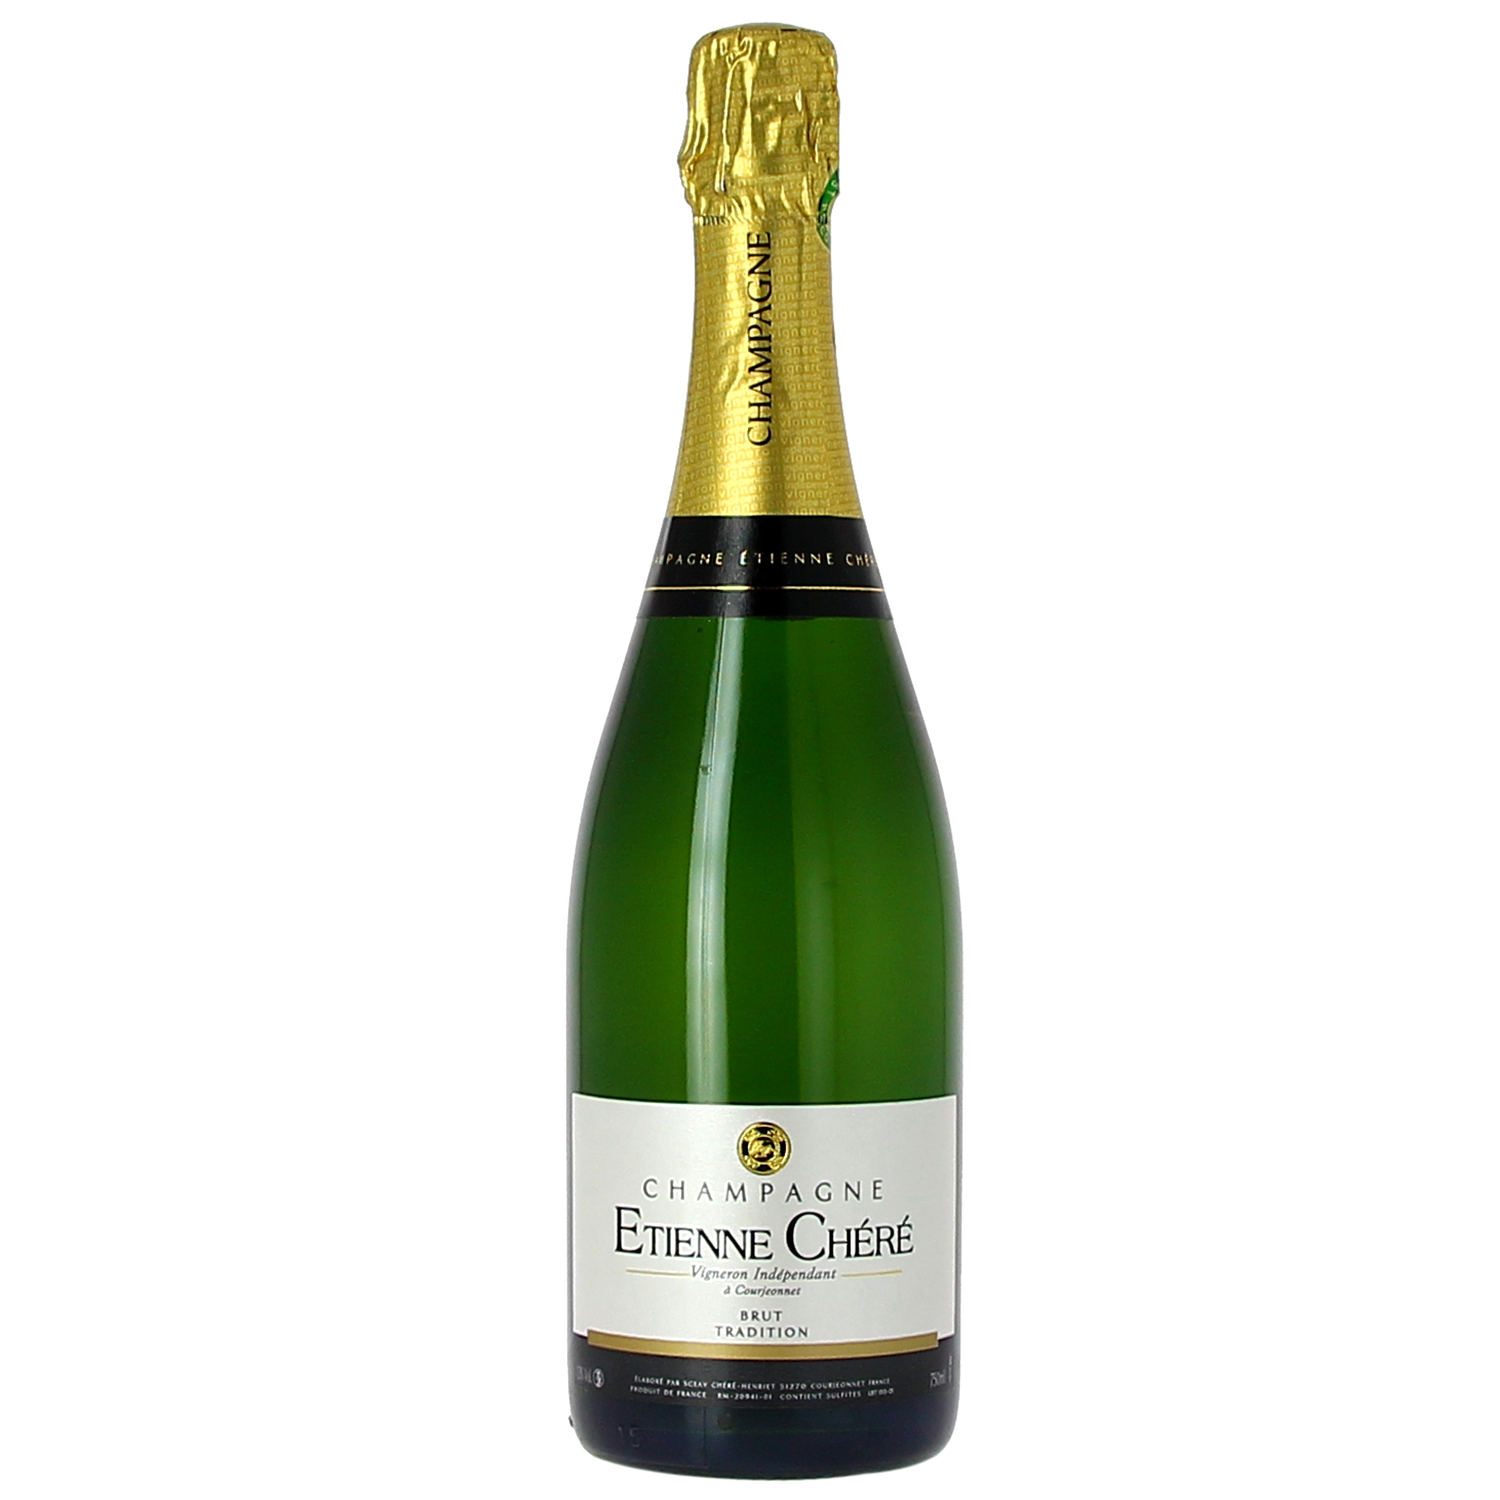 Champagne Etienne Chéré: Tradition